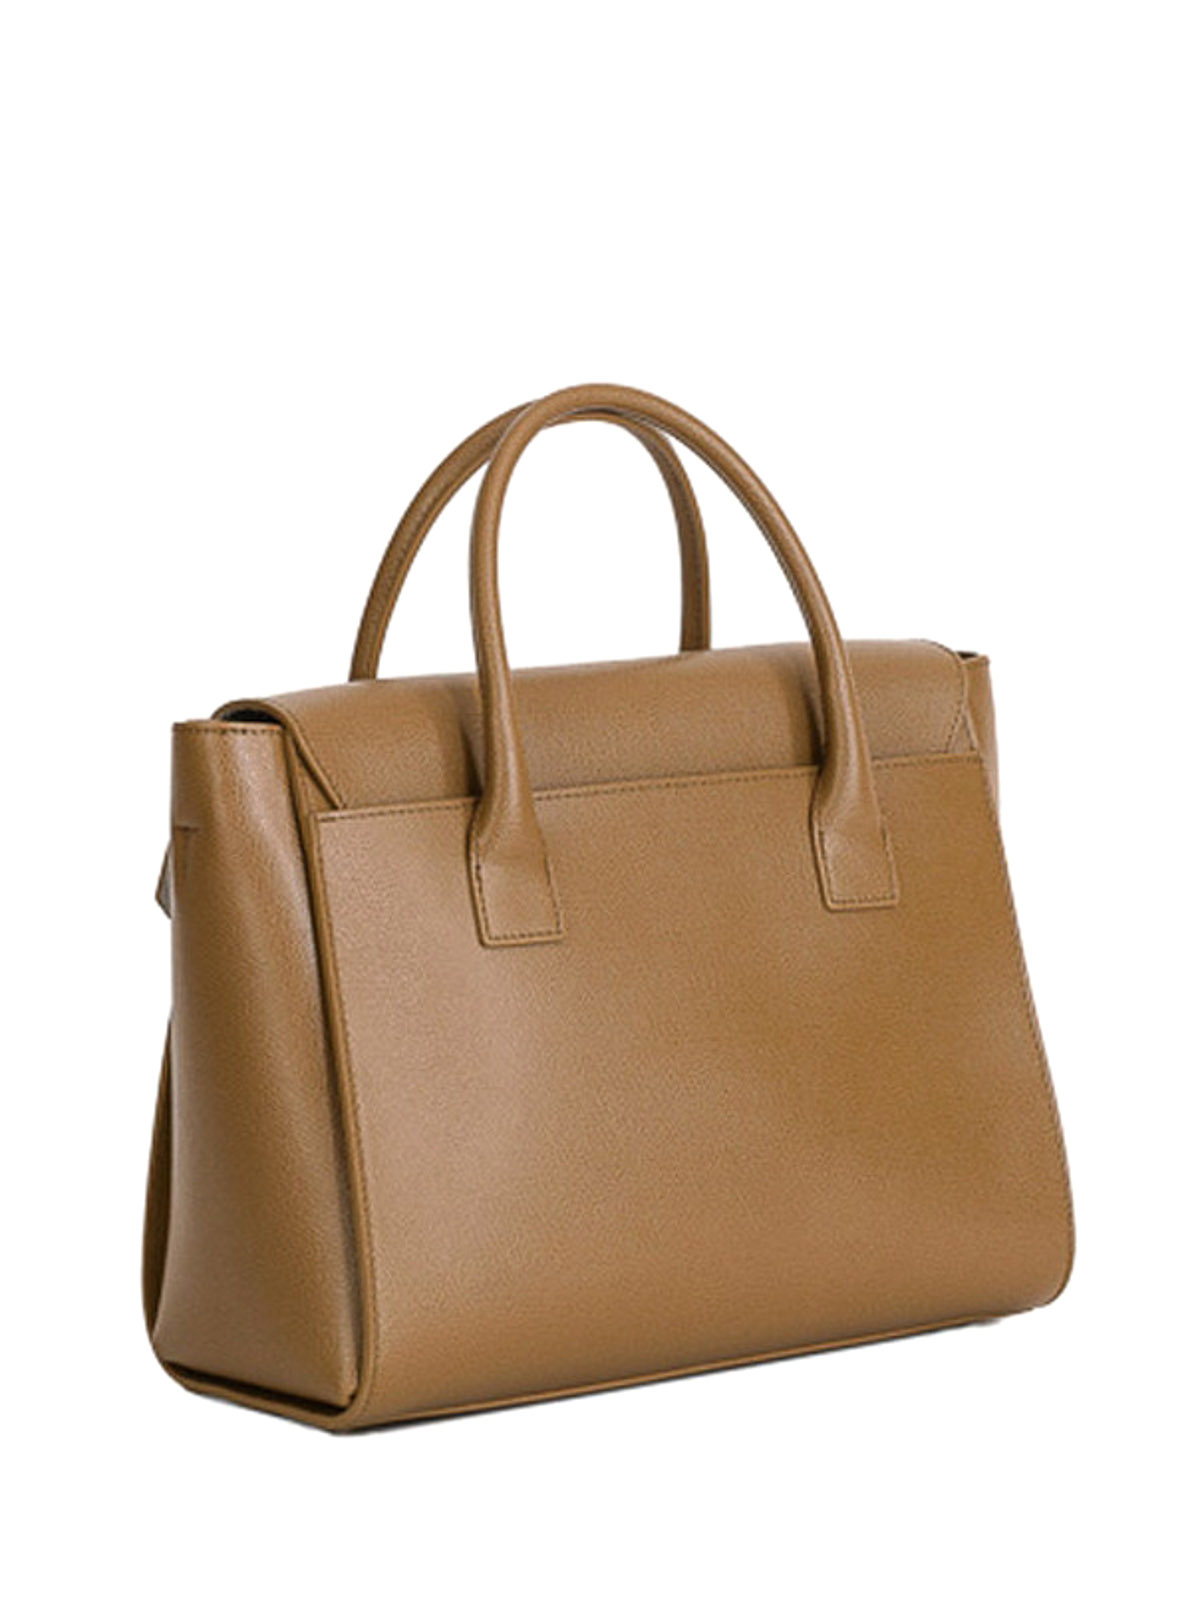 Furla - Metropolis medium leather bag - bowling bags - 851184NOCE